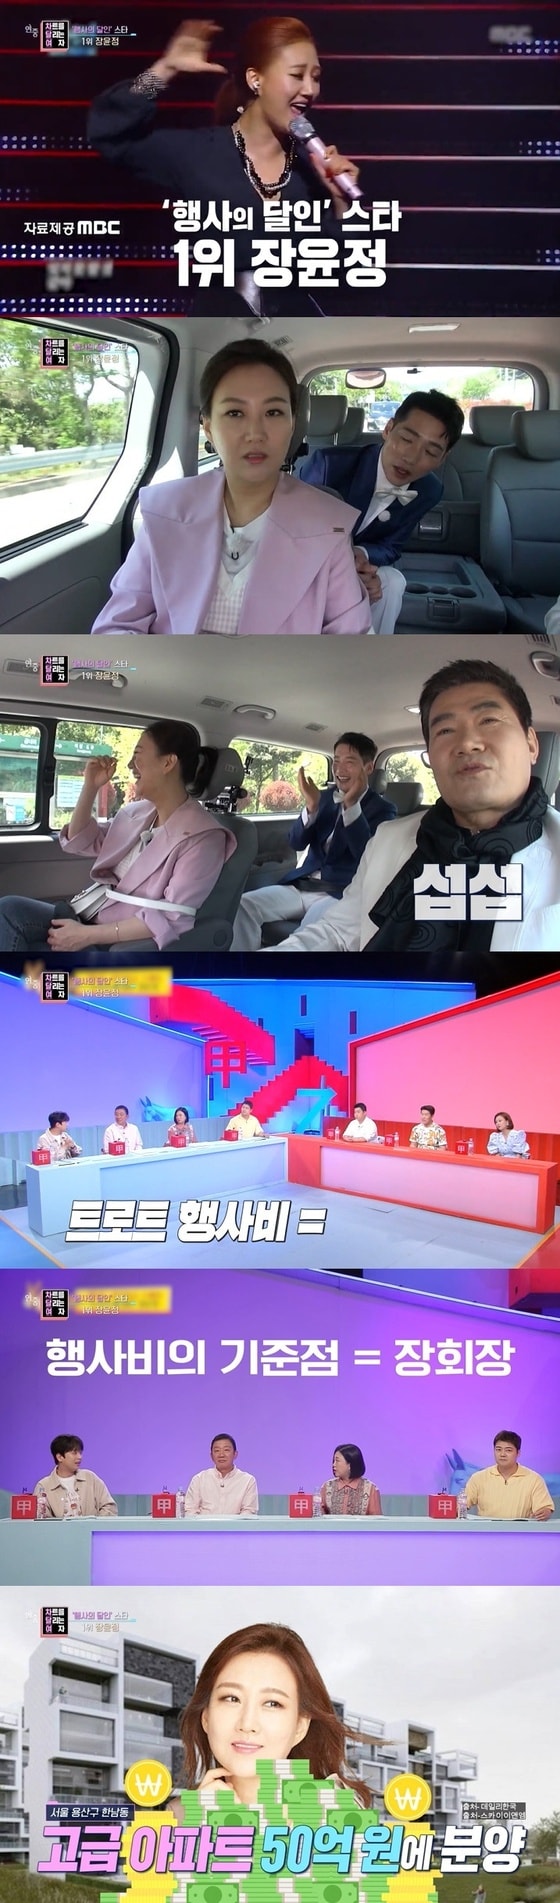 KBS 2TV '연중라이브' 방송 화면 캡처 © 뉴스1